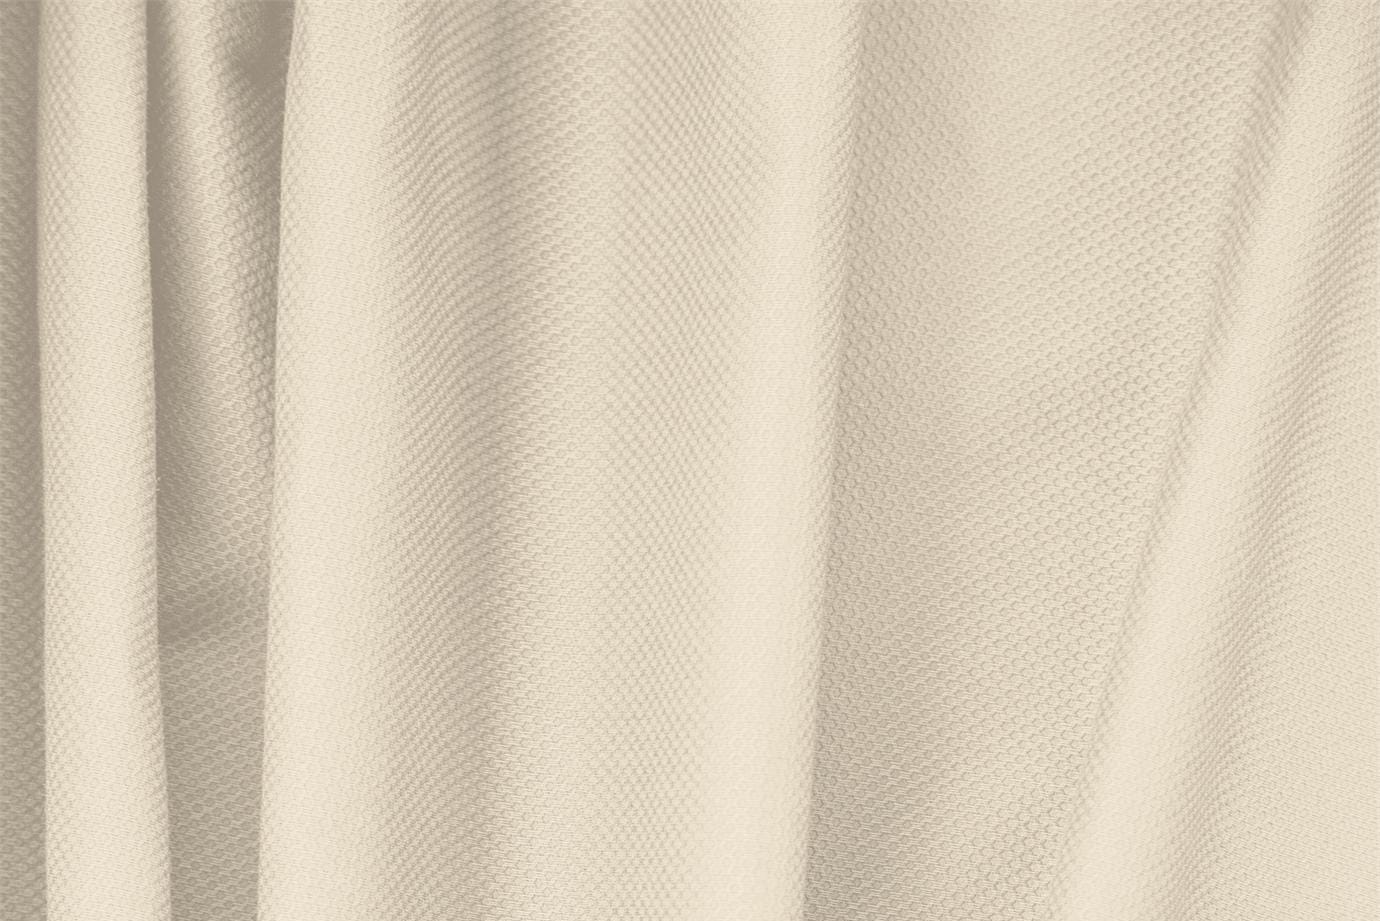 Tissu Piquet Stretch Beige écru en Coton, Stretch pour vêtements